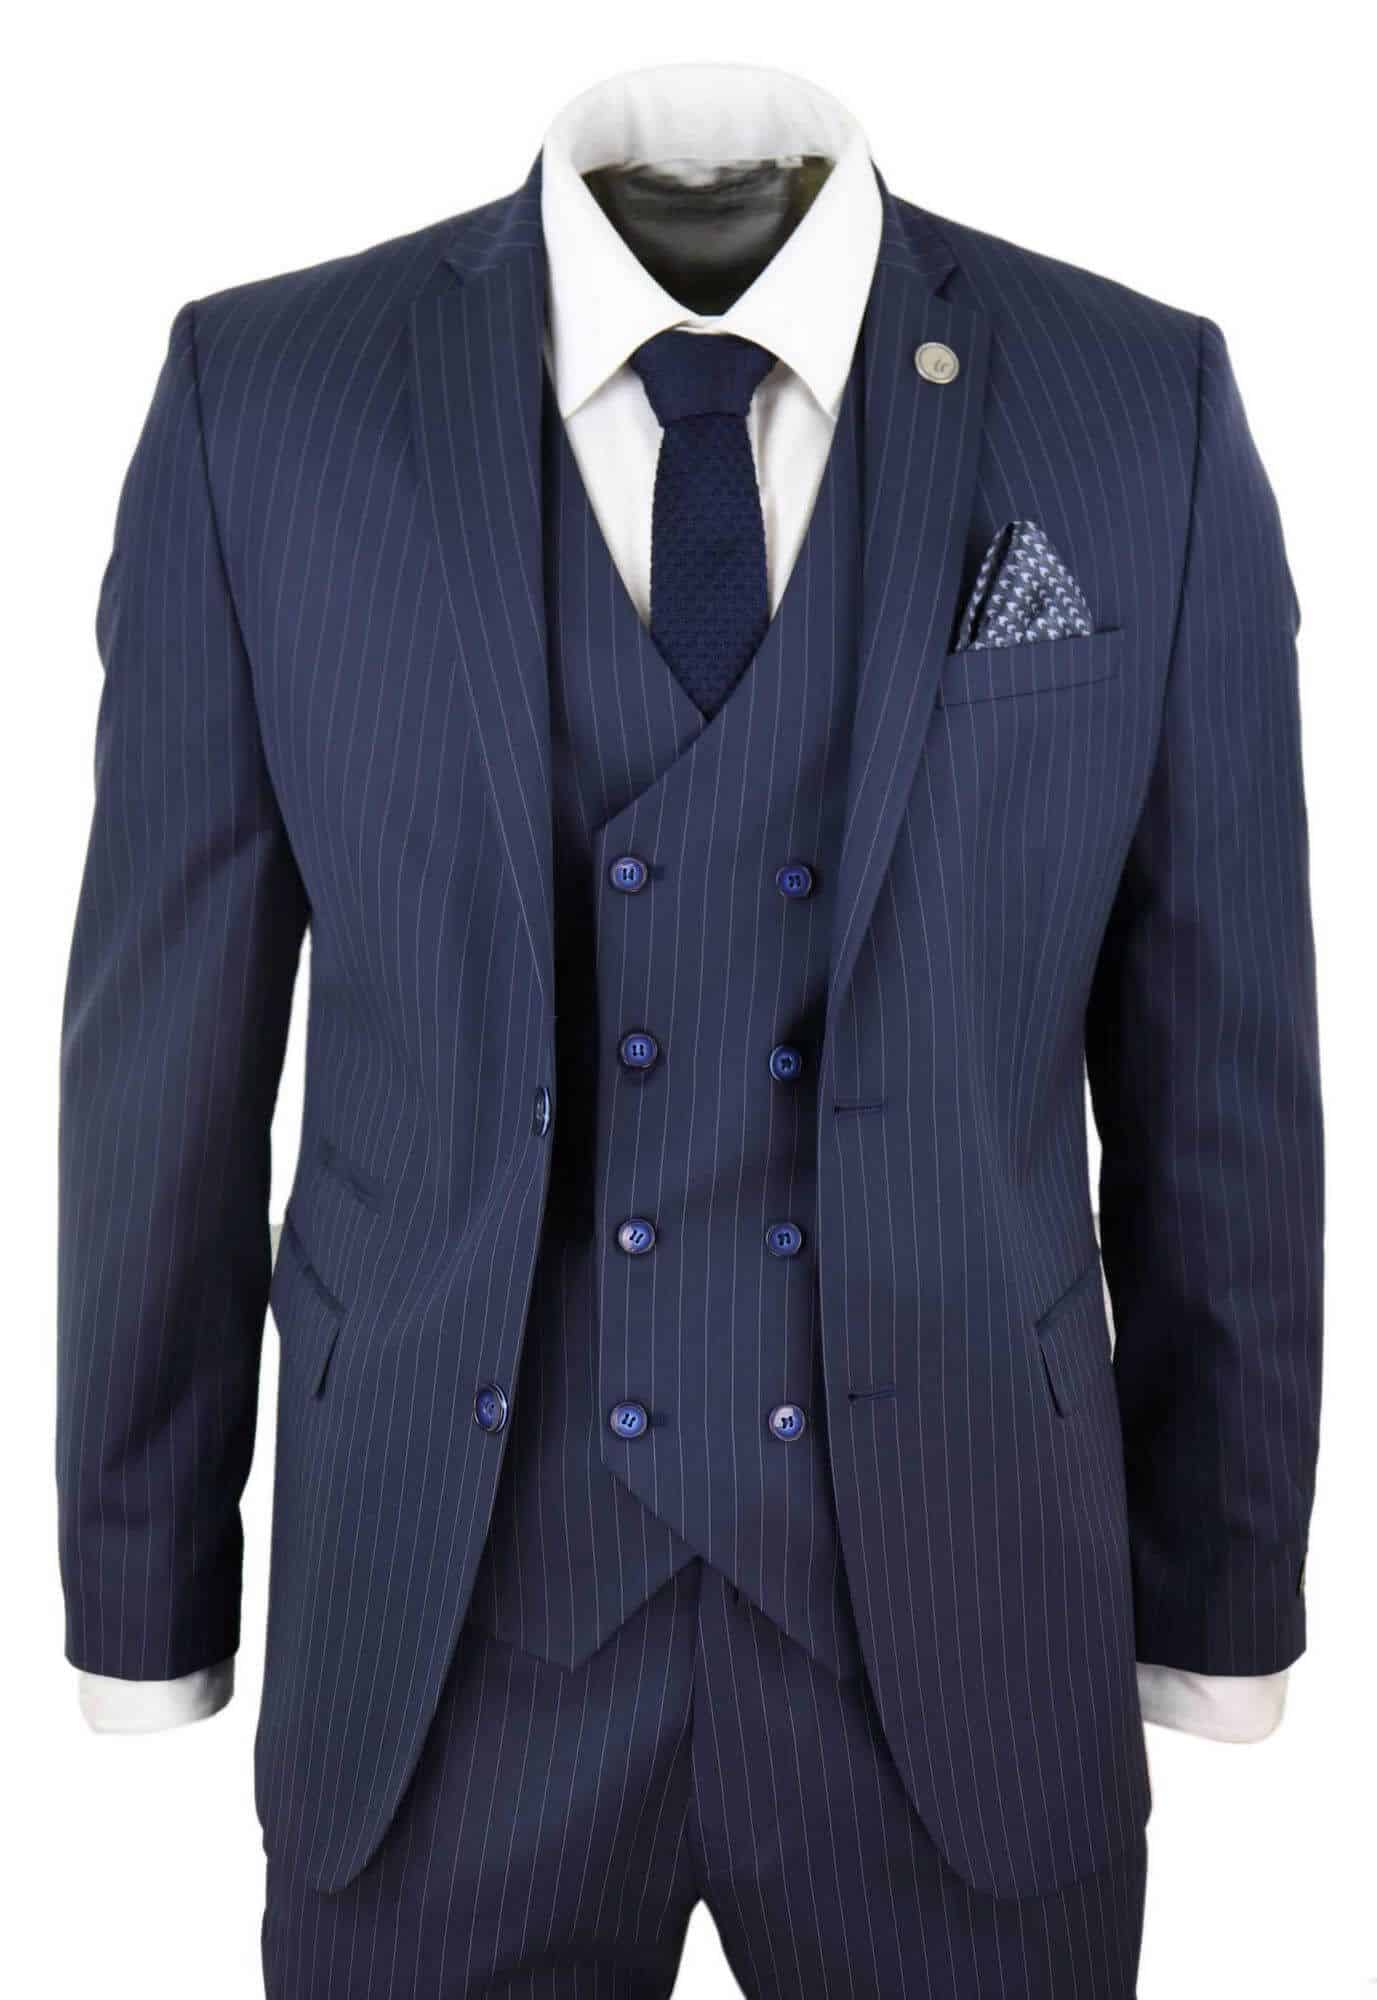 Men Suits, Pinstripe Suit, Suits for Men, Blue Men Suit, Blue Pin